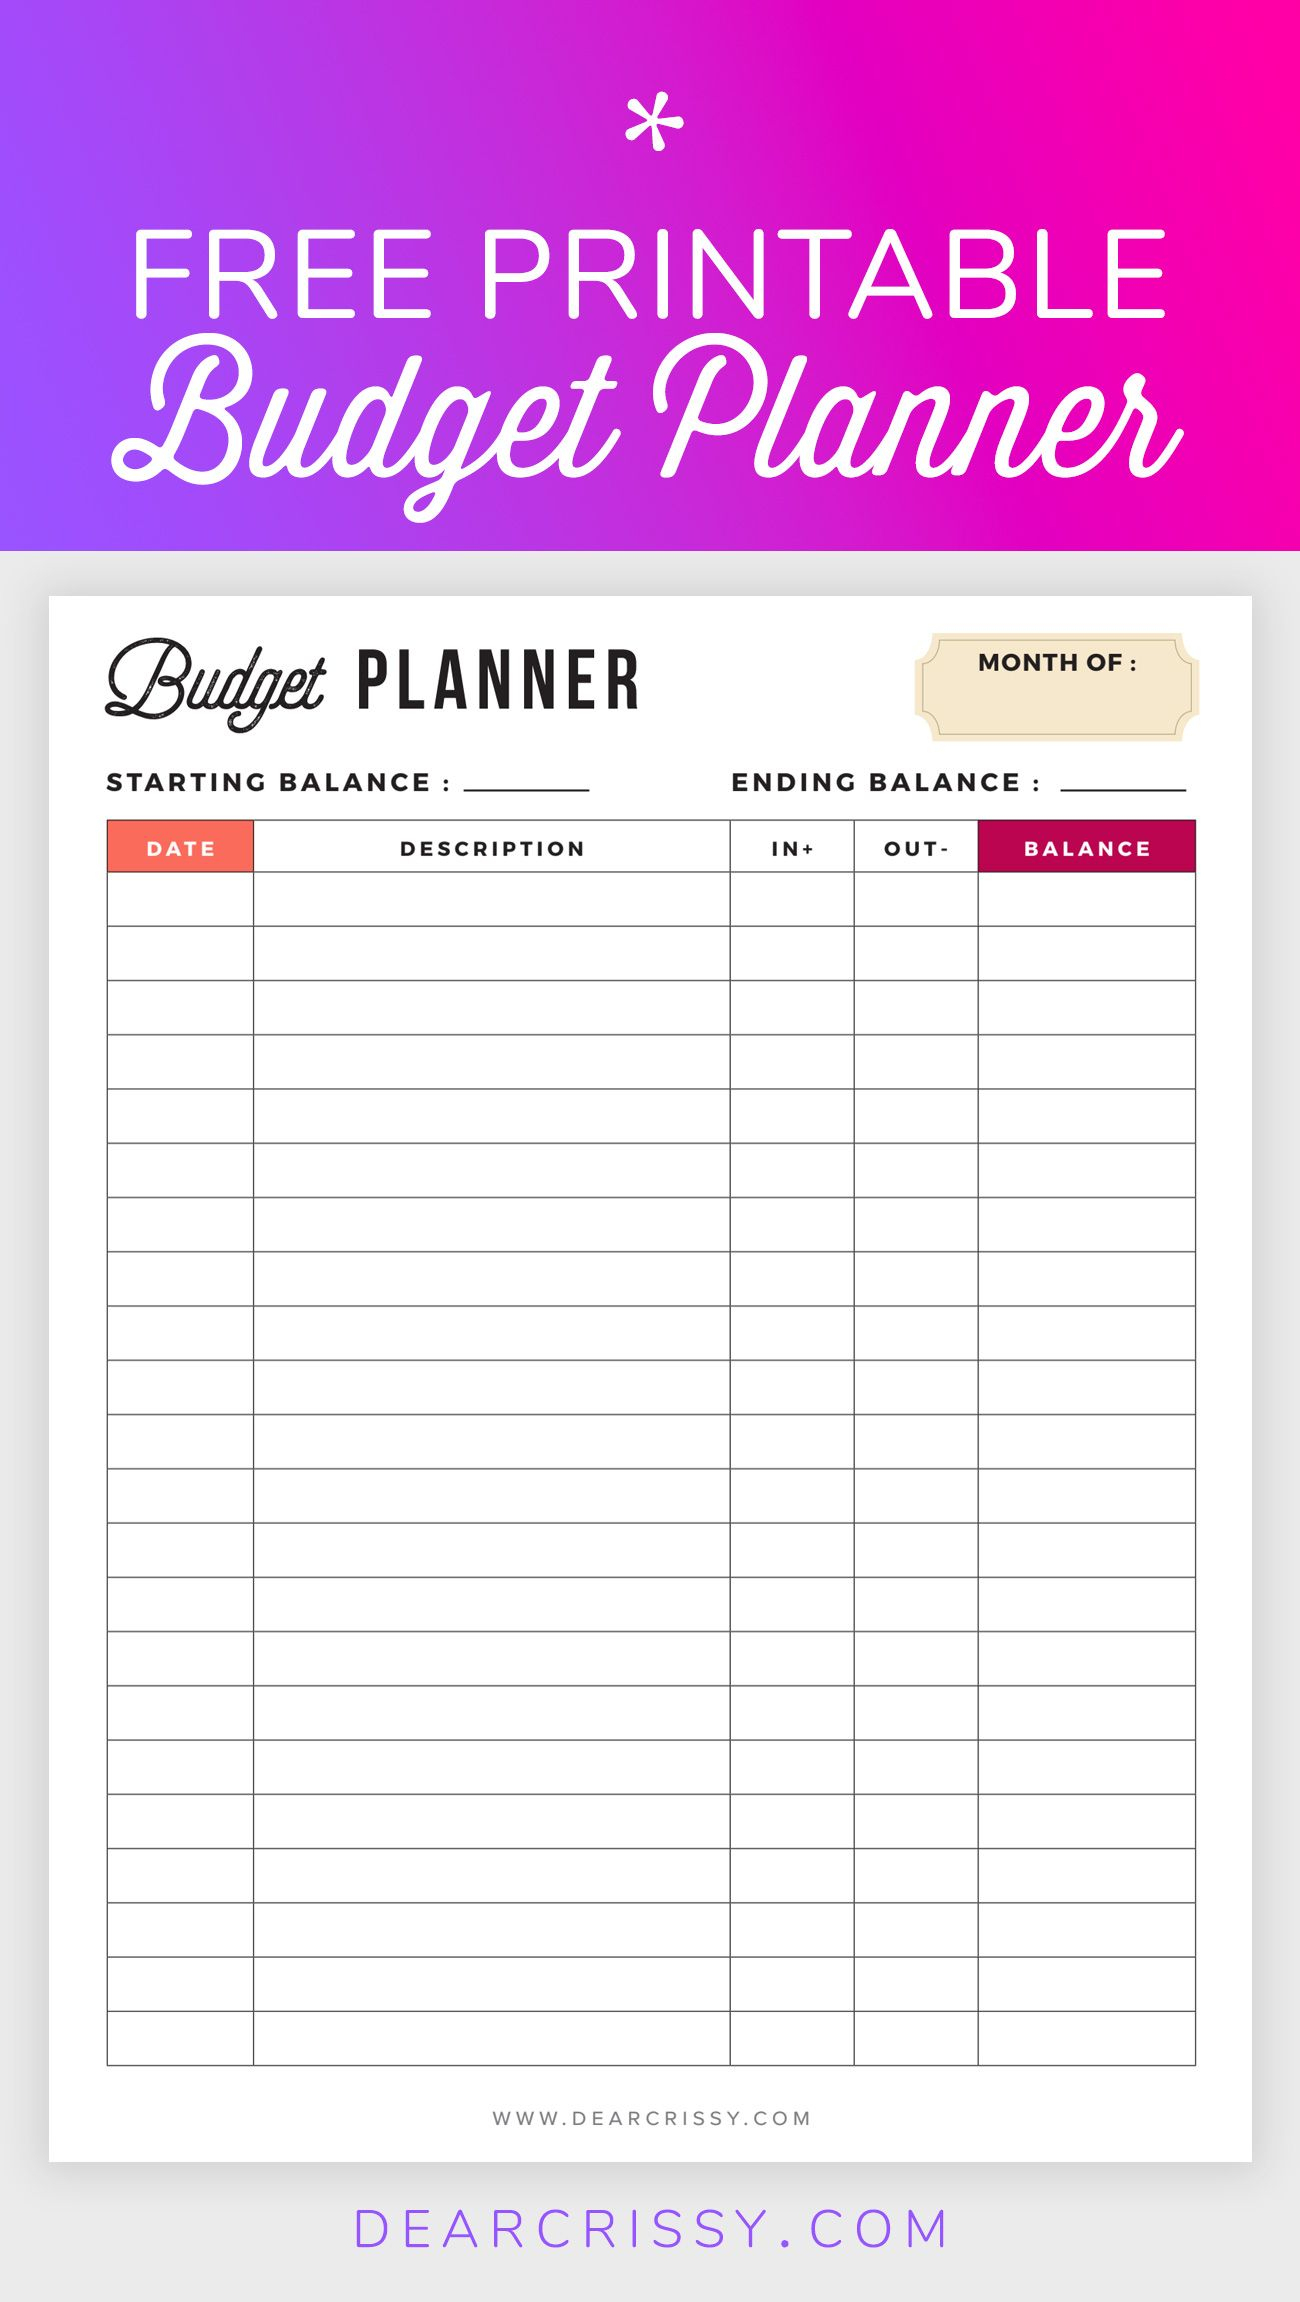 Free Budget Planner Printable - Printable Finance Planner | Home - Free Printable Bill Planner